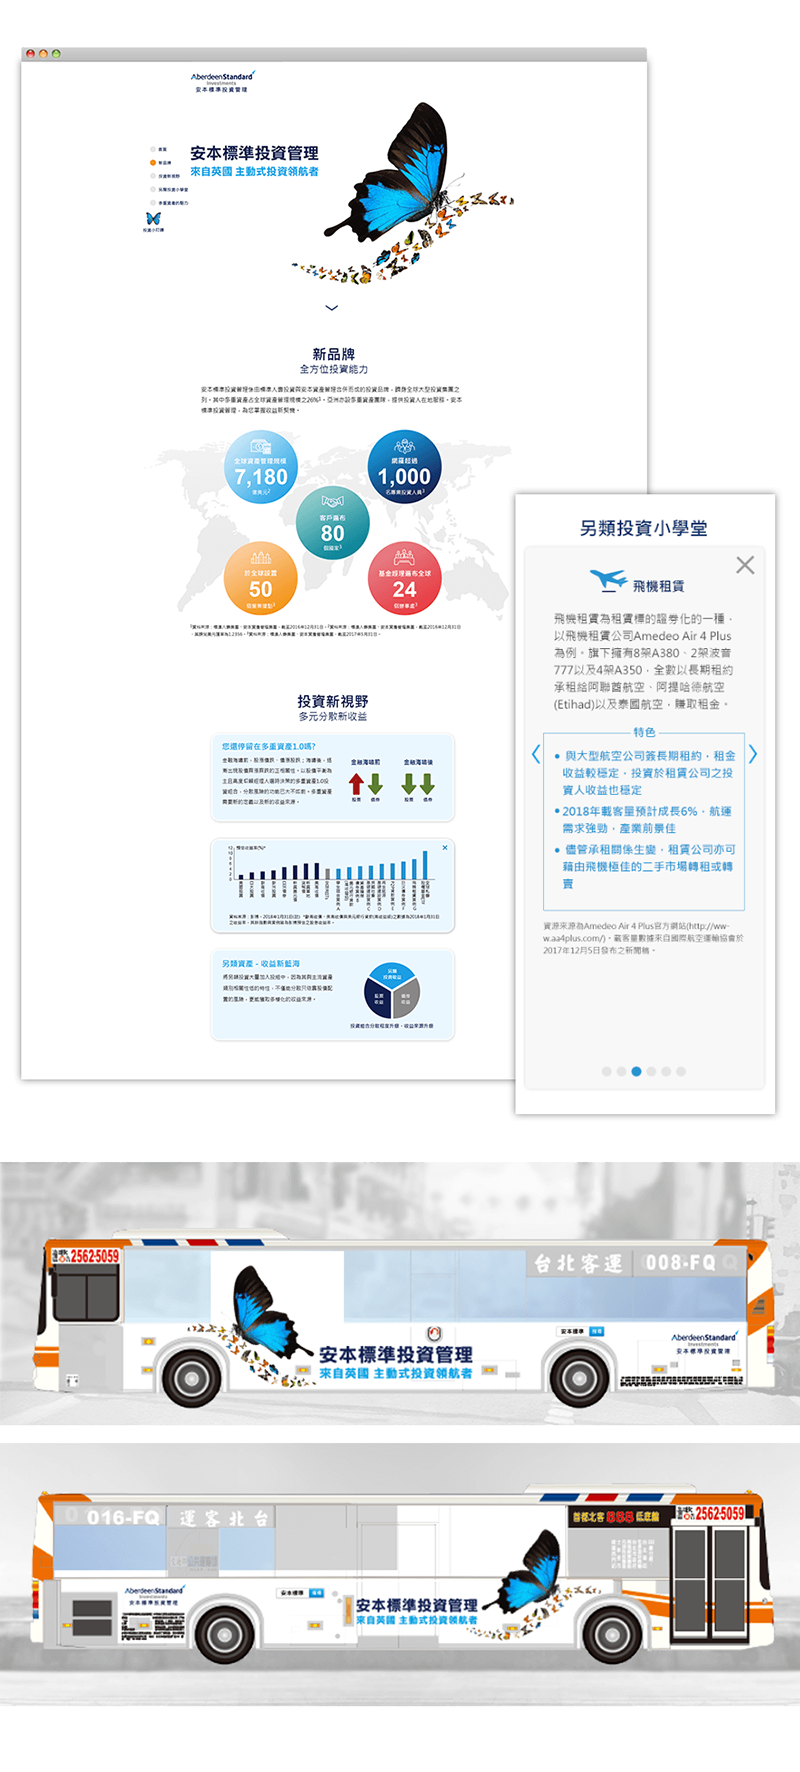 安本標準投資管理 品牌行銷 活動網站